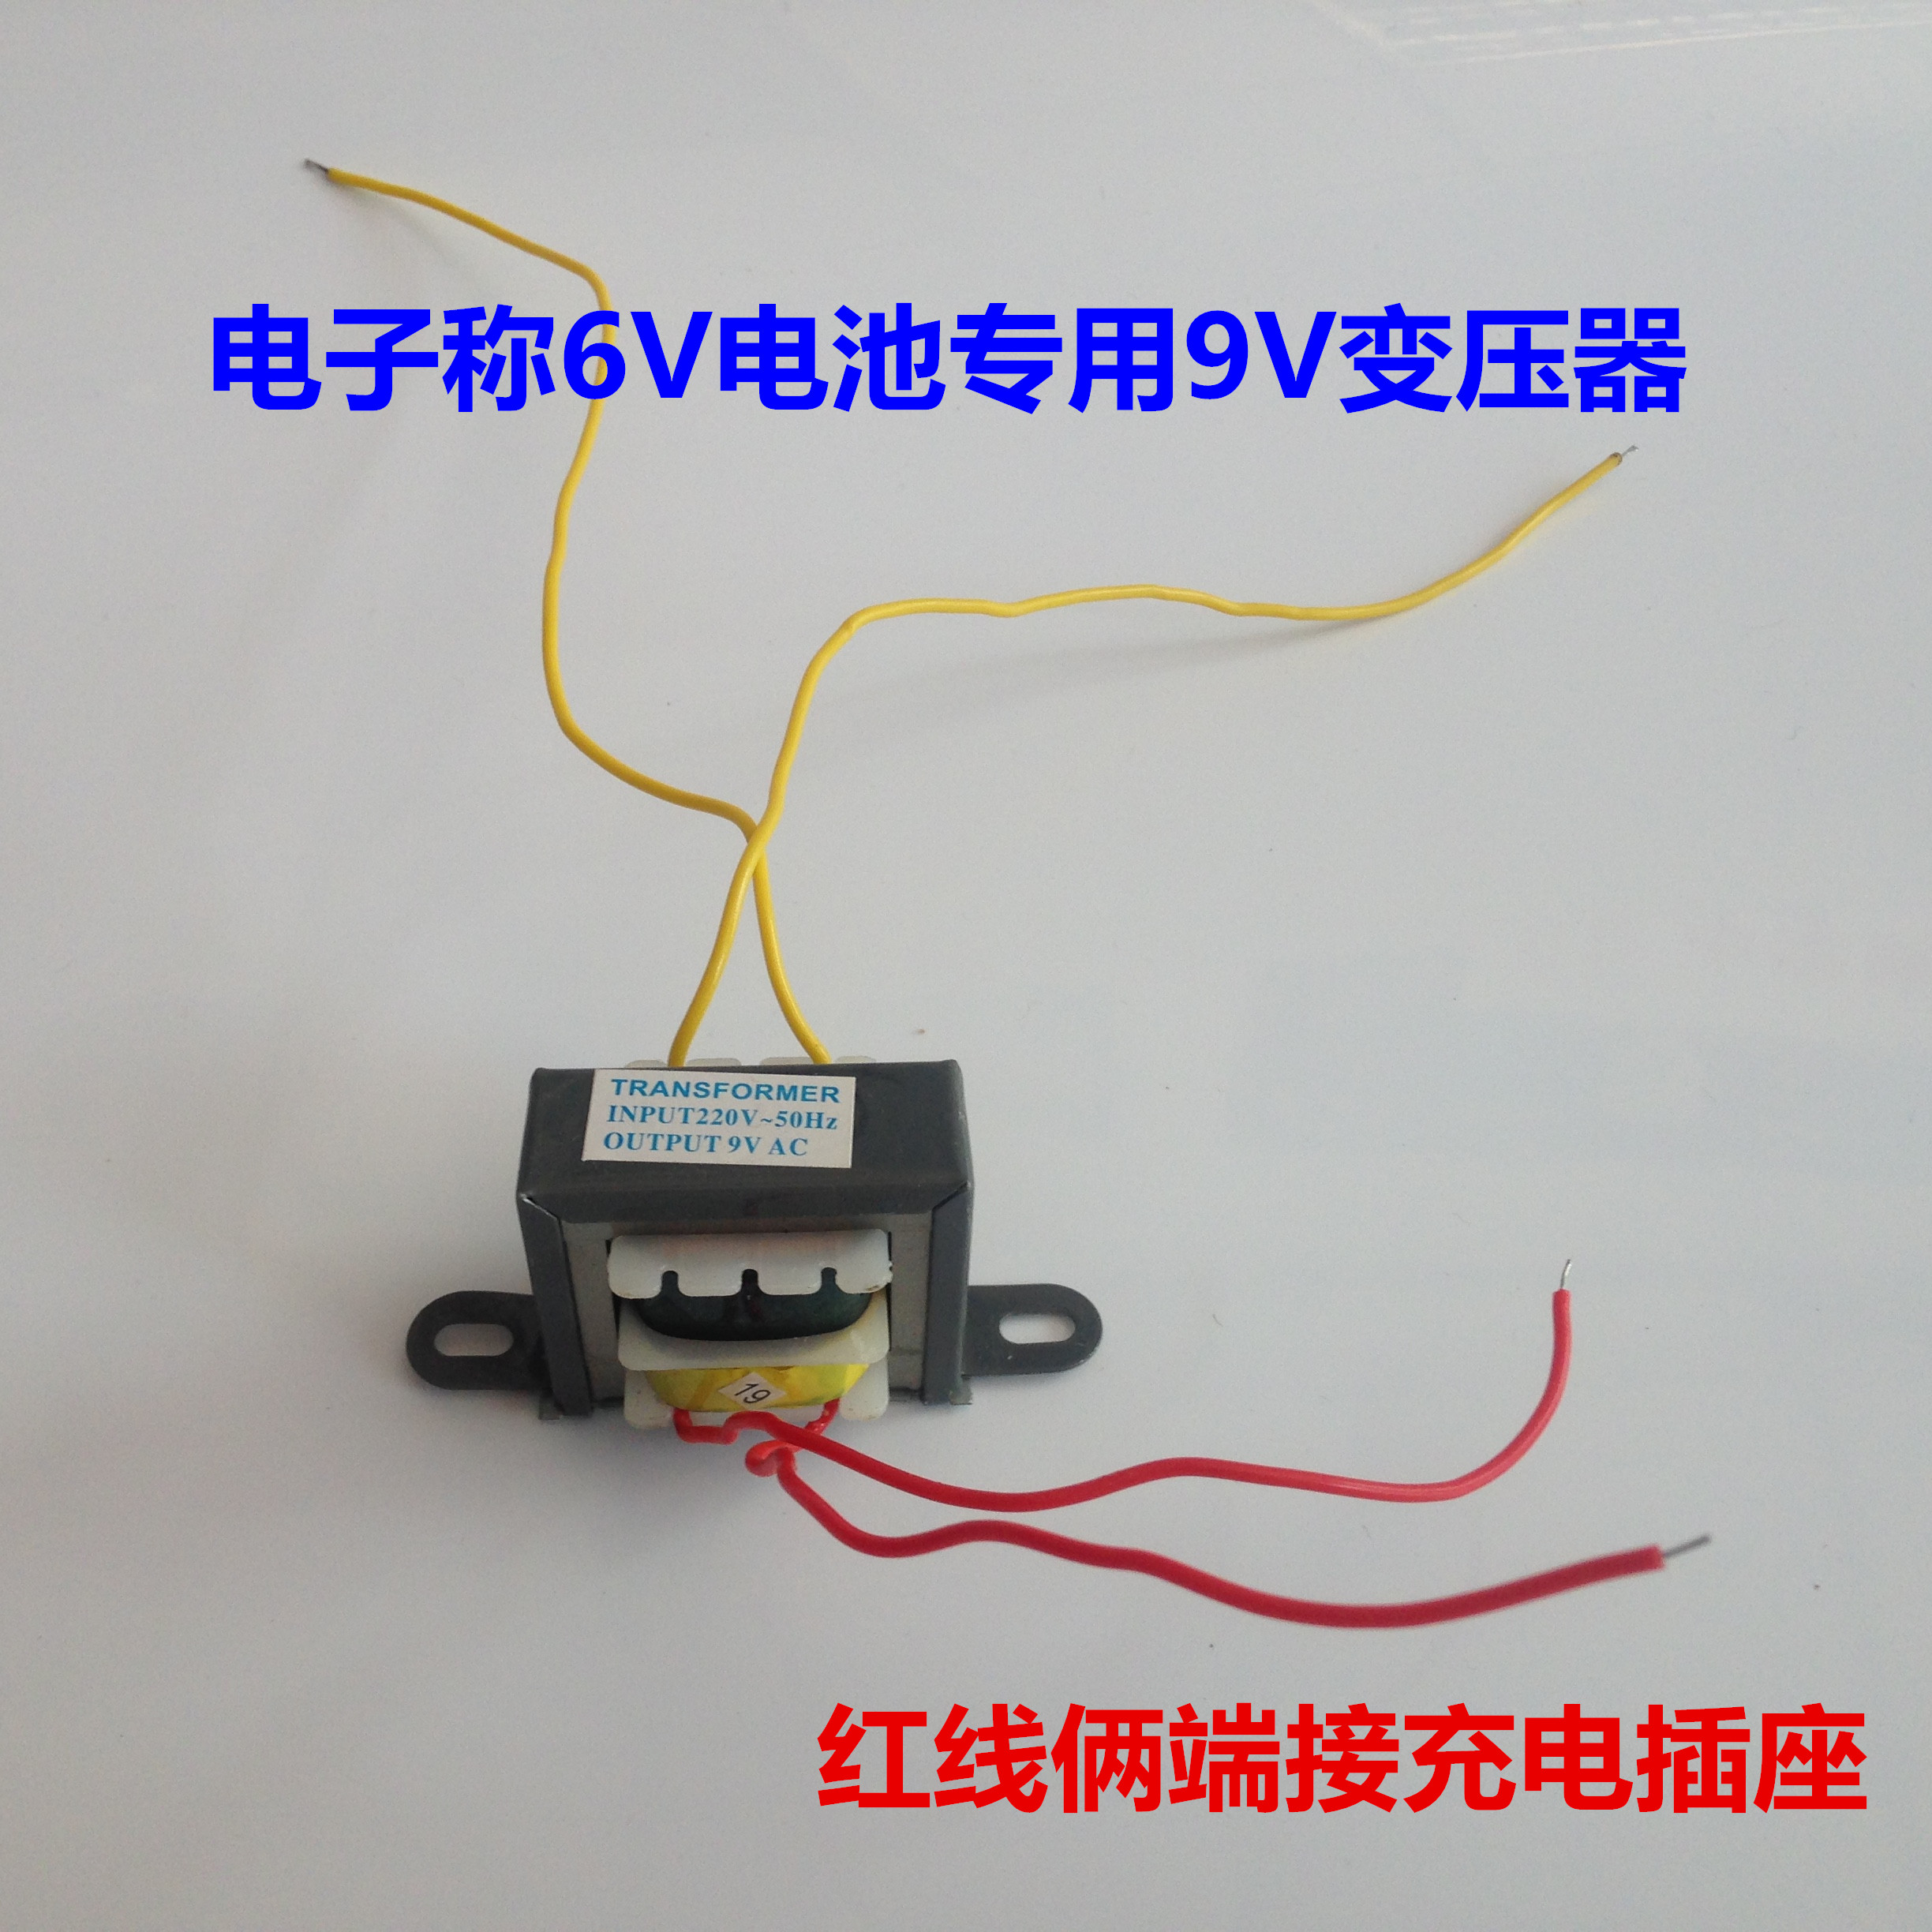 电子称配件 电子秤充电器 变压器 6.5V 9V 变压器 充电器6V充电器 - 图2